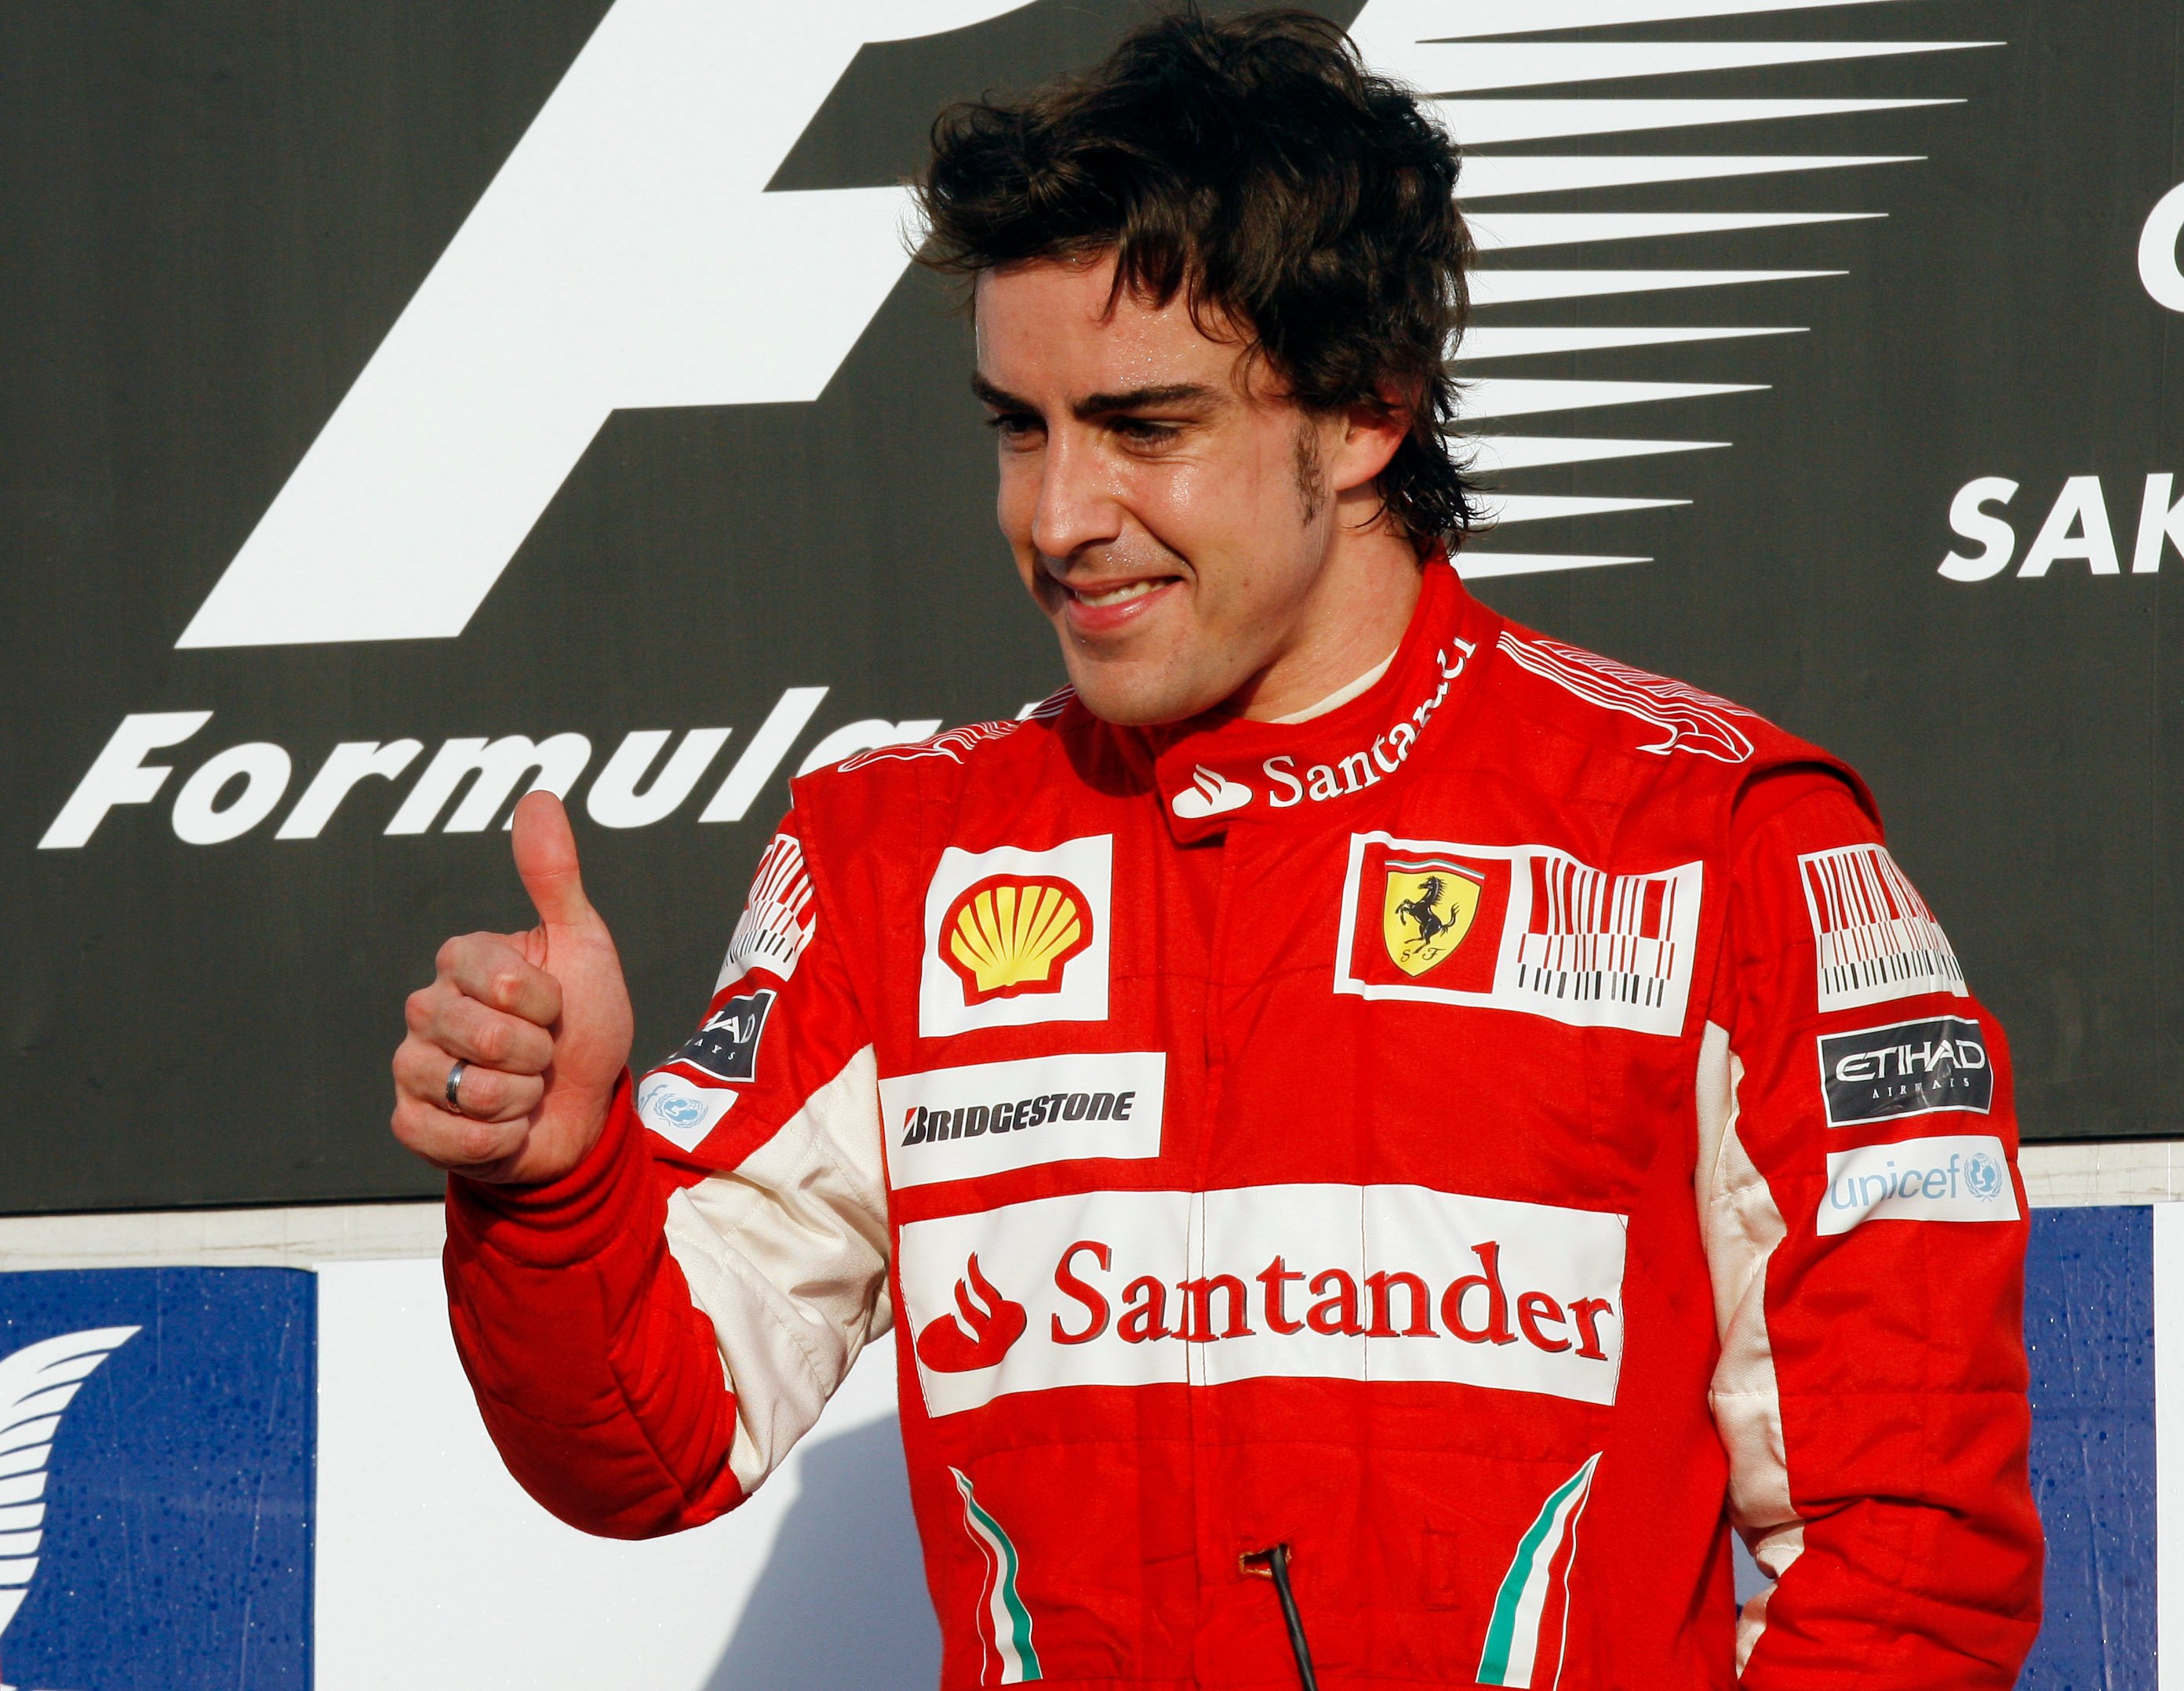 Formel 1, Ferrari, Försäkring, Fernando Alonso